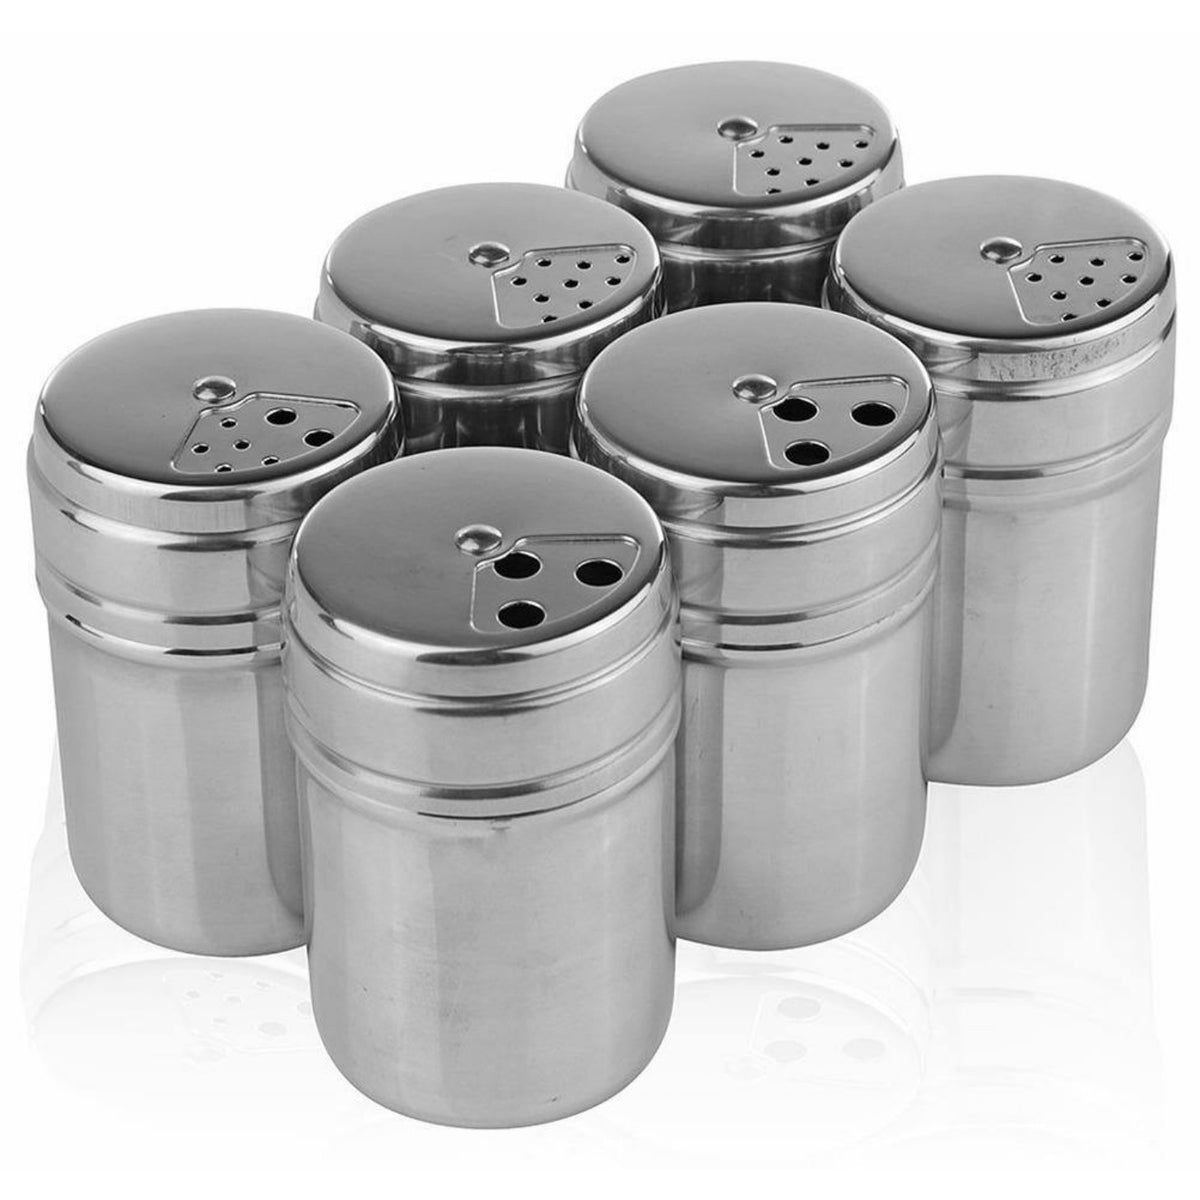 Salt Pepper Shaker Stainless Steel Condiment Dispenser for Hiking Camping 